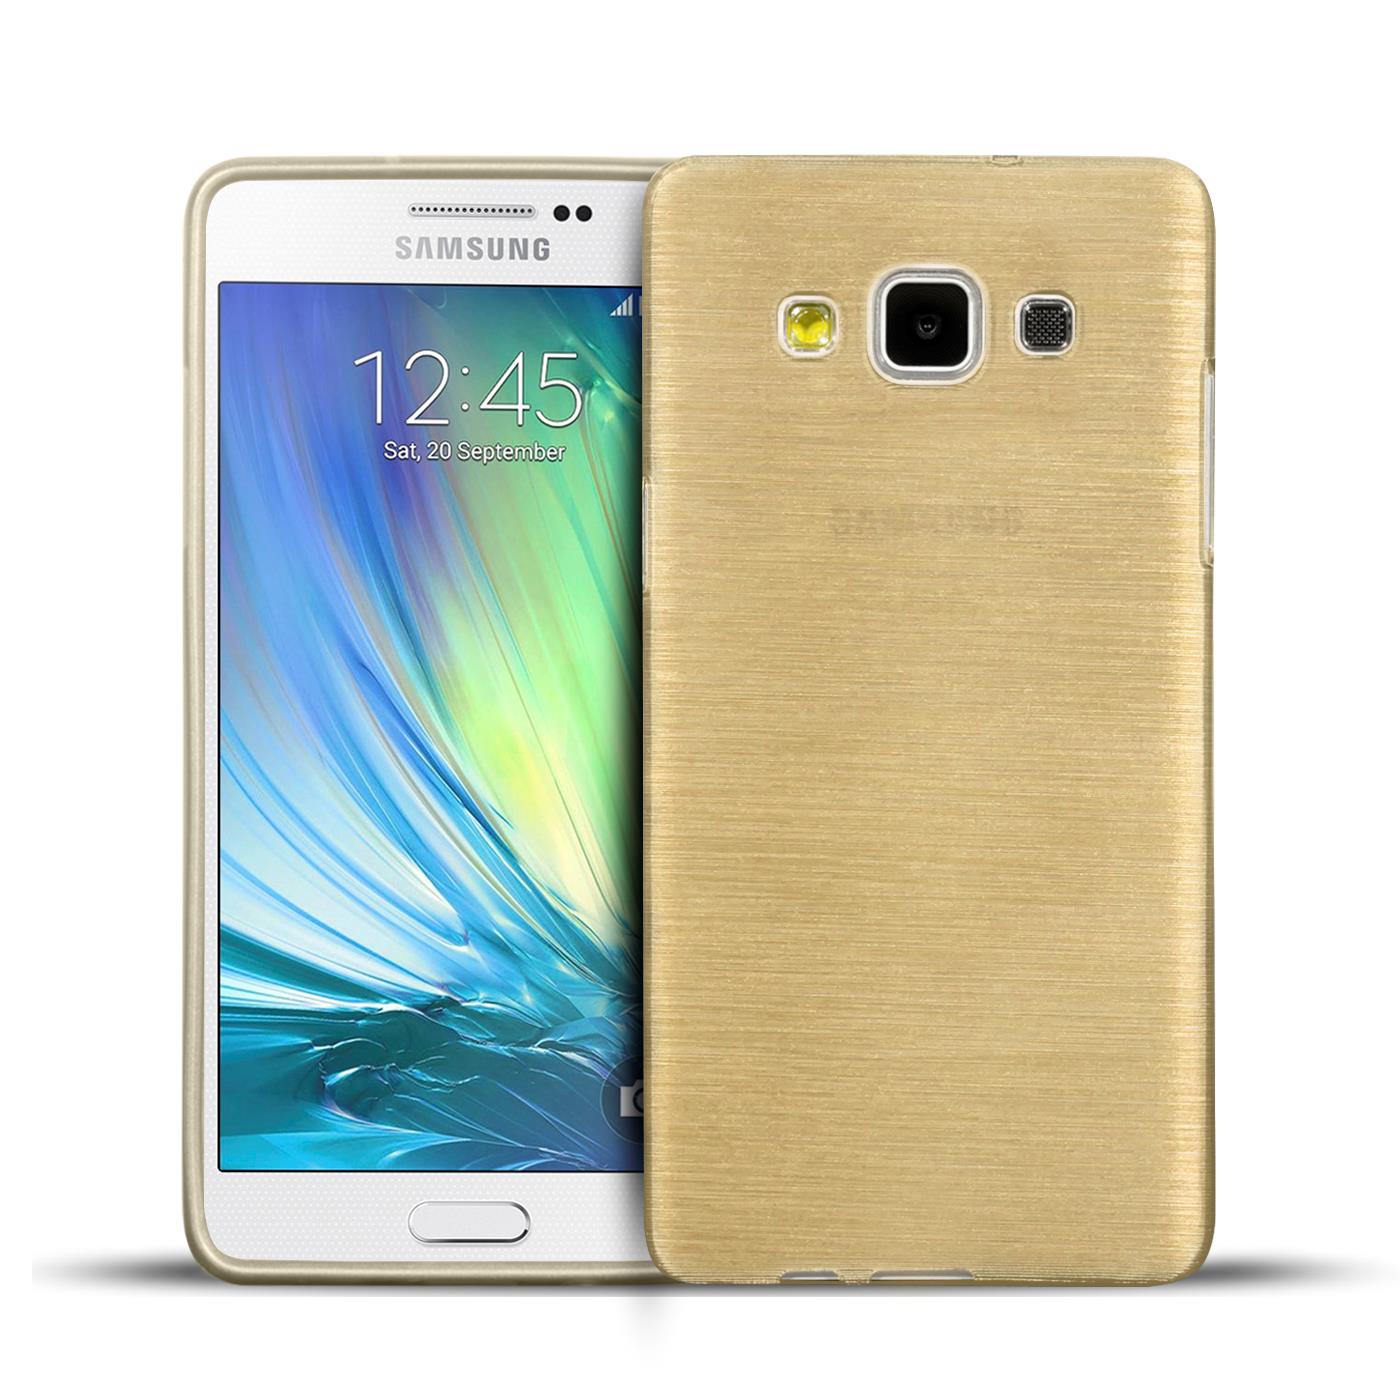 Samsung a5 2015 Gold